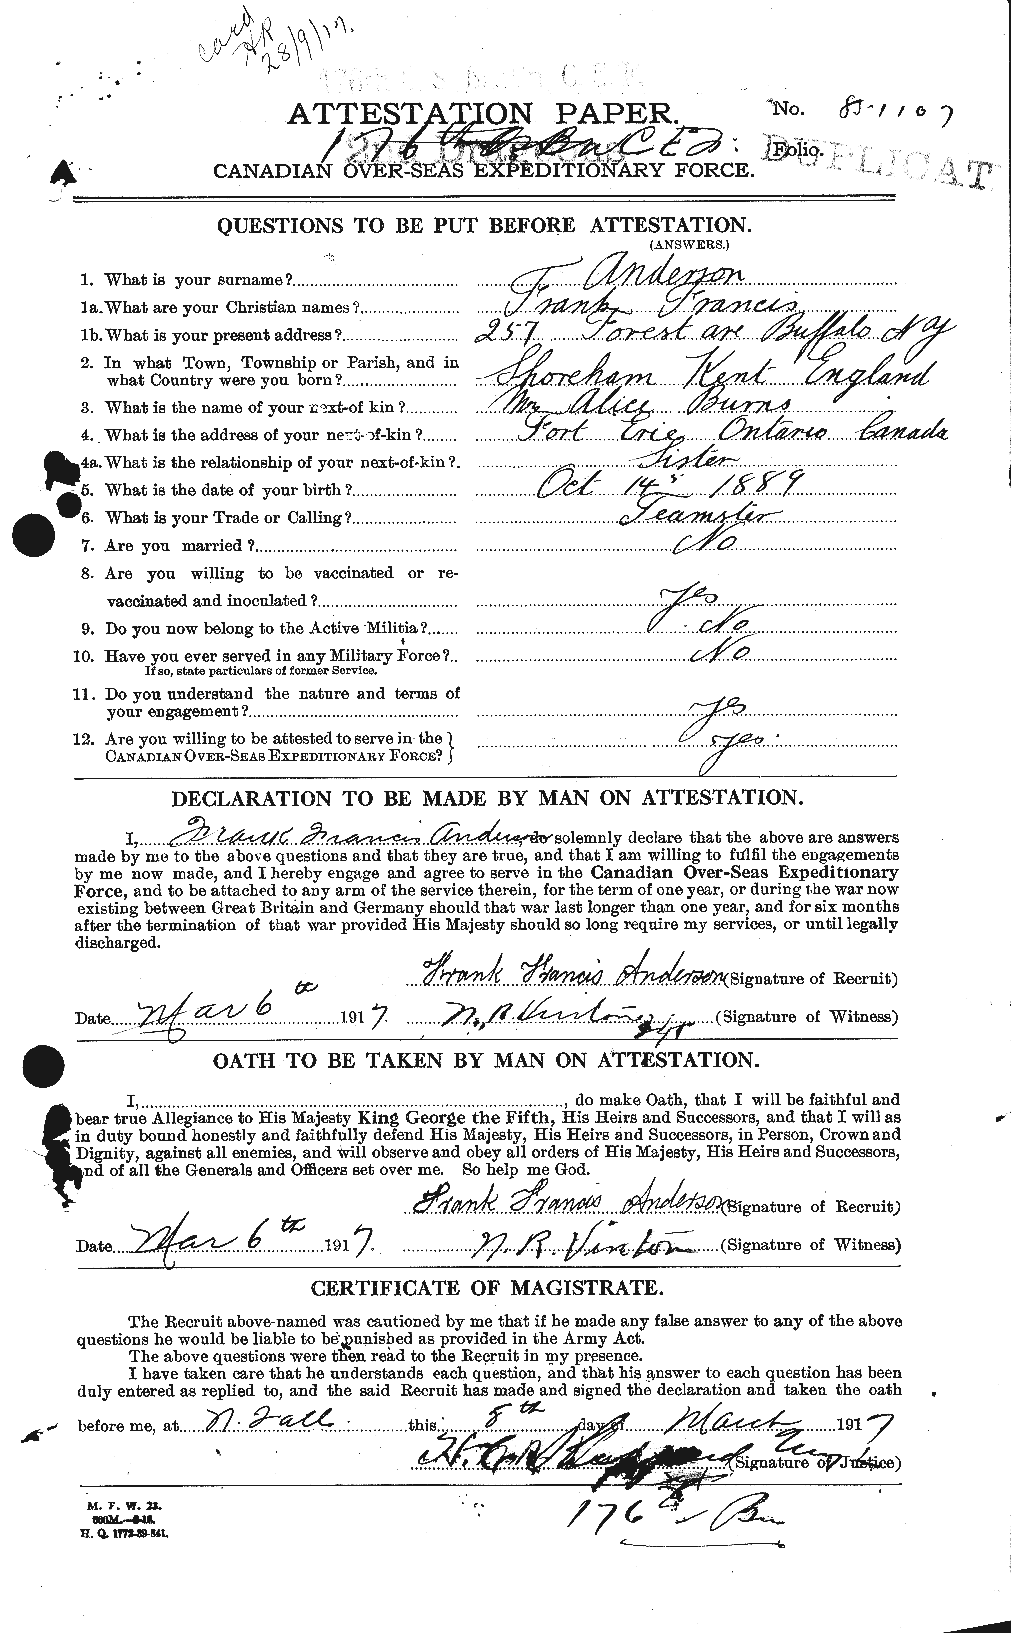 Dossiers du Personnel de la Première Guerre mondiale - CEC 209849a